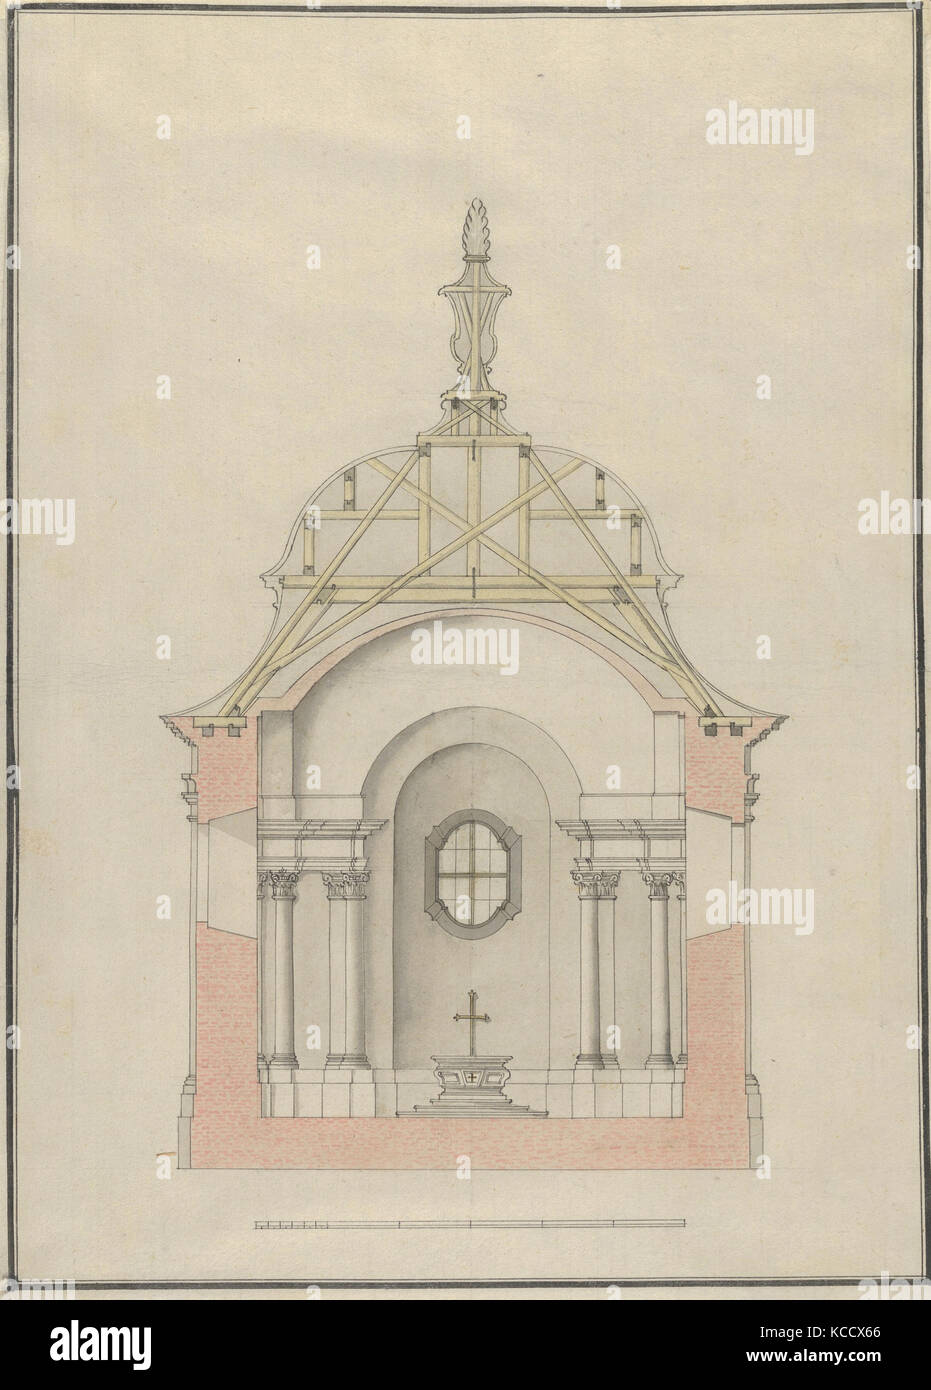 Coupe transversale d'une église baroque ou chapelle avec un toit en forme de cloche, ca. 1650-1725 Banque D'Images